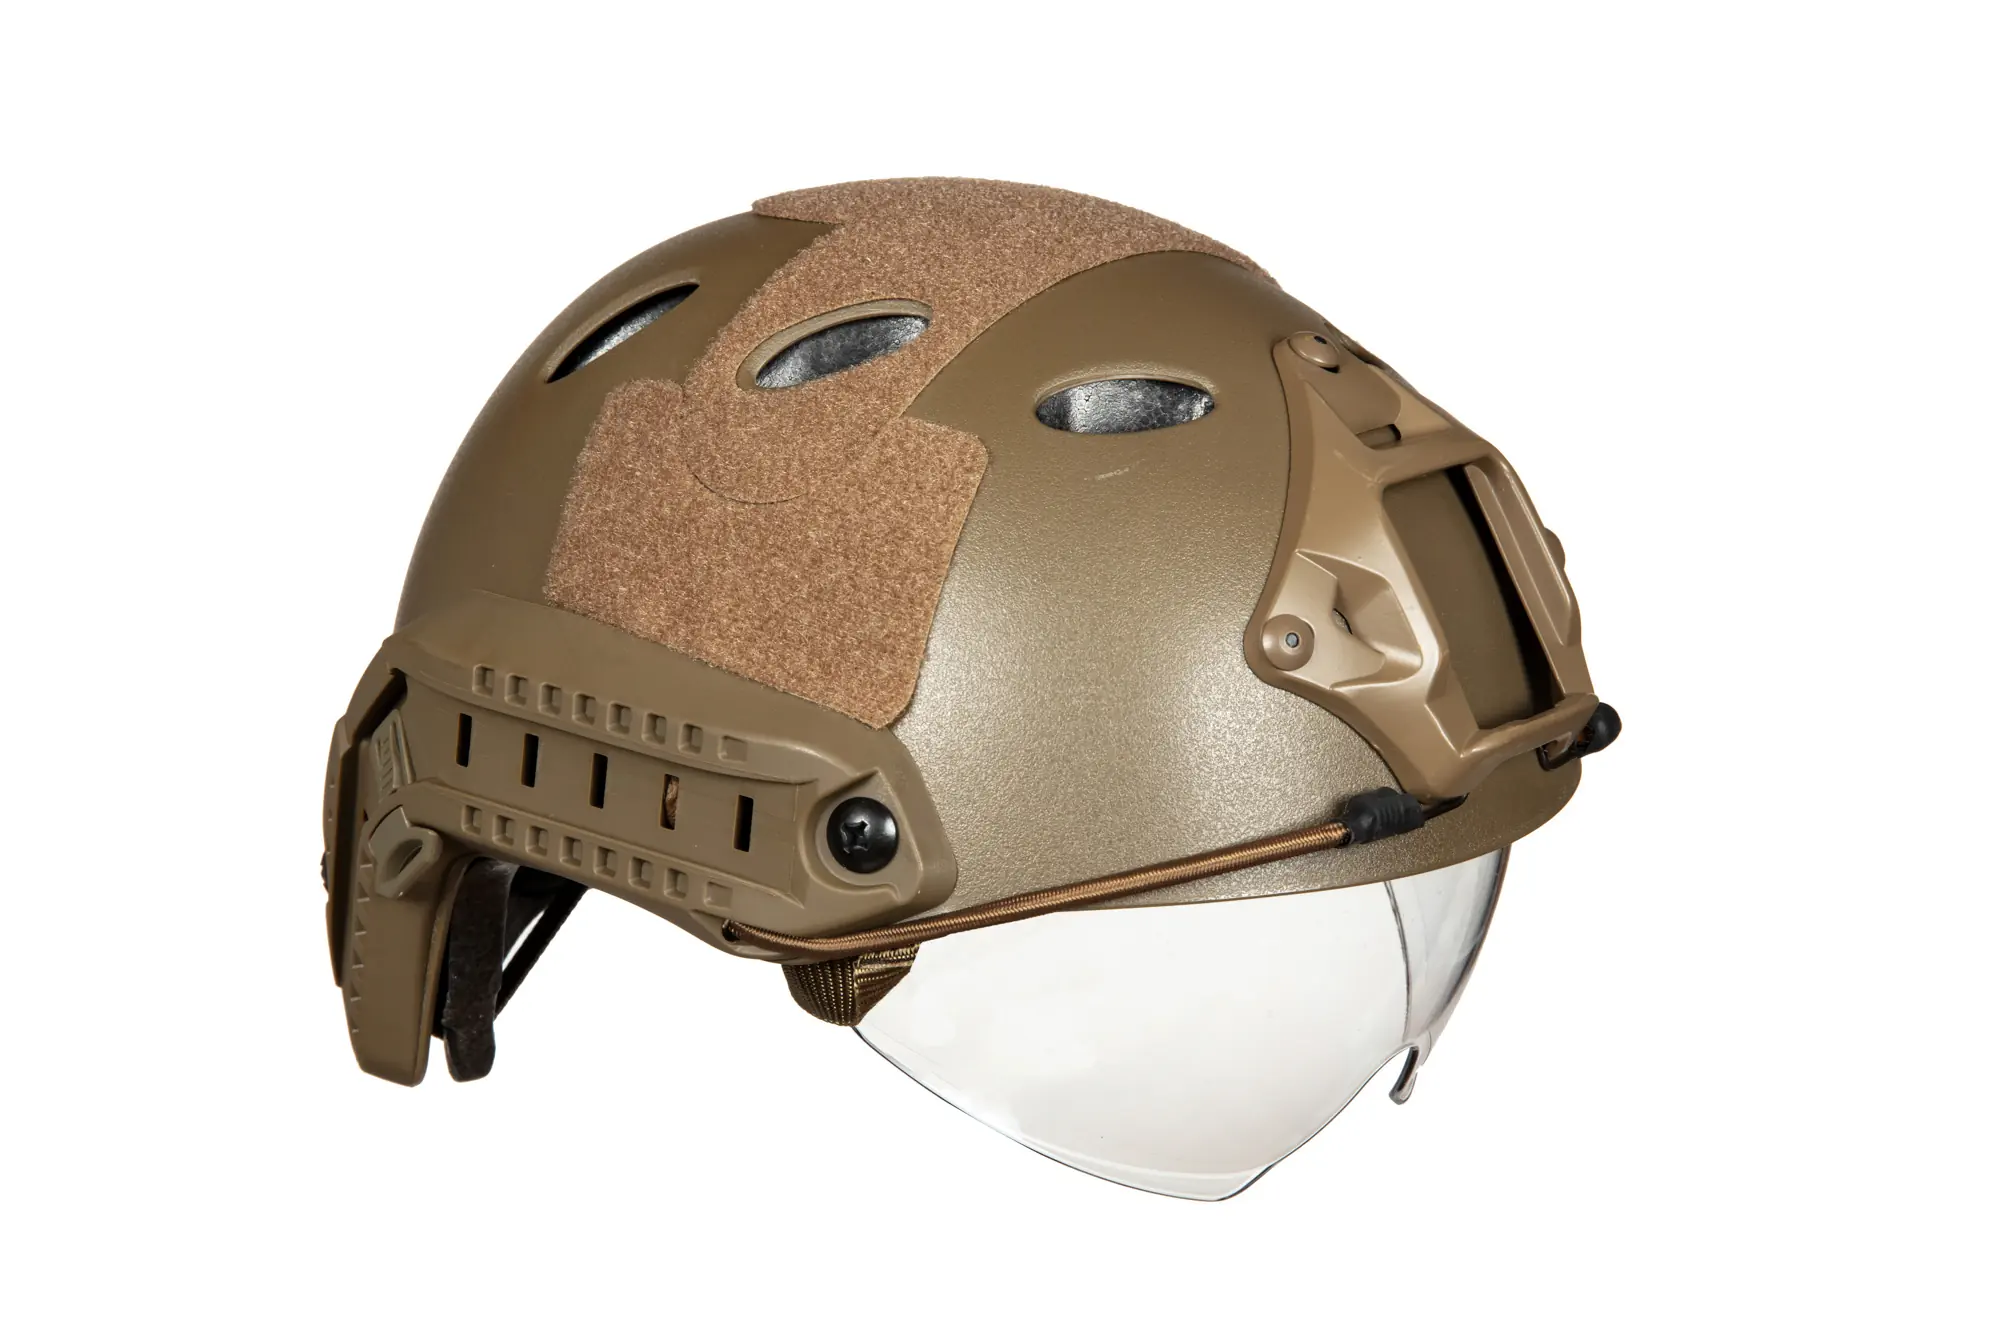 X-Shield PJ Helmet Replica With Goggles - Tan